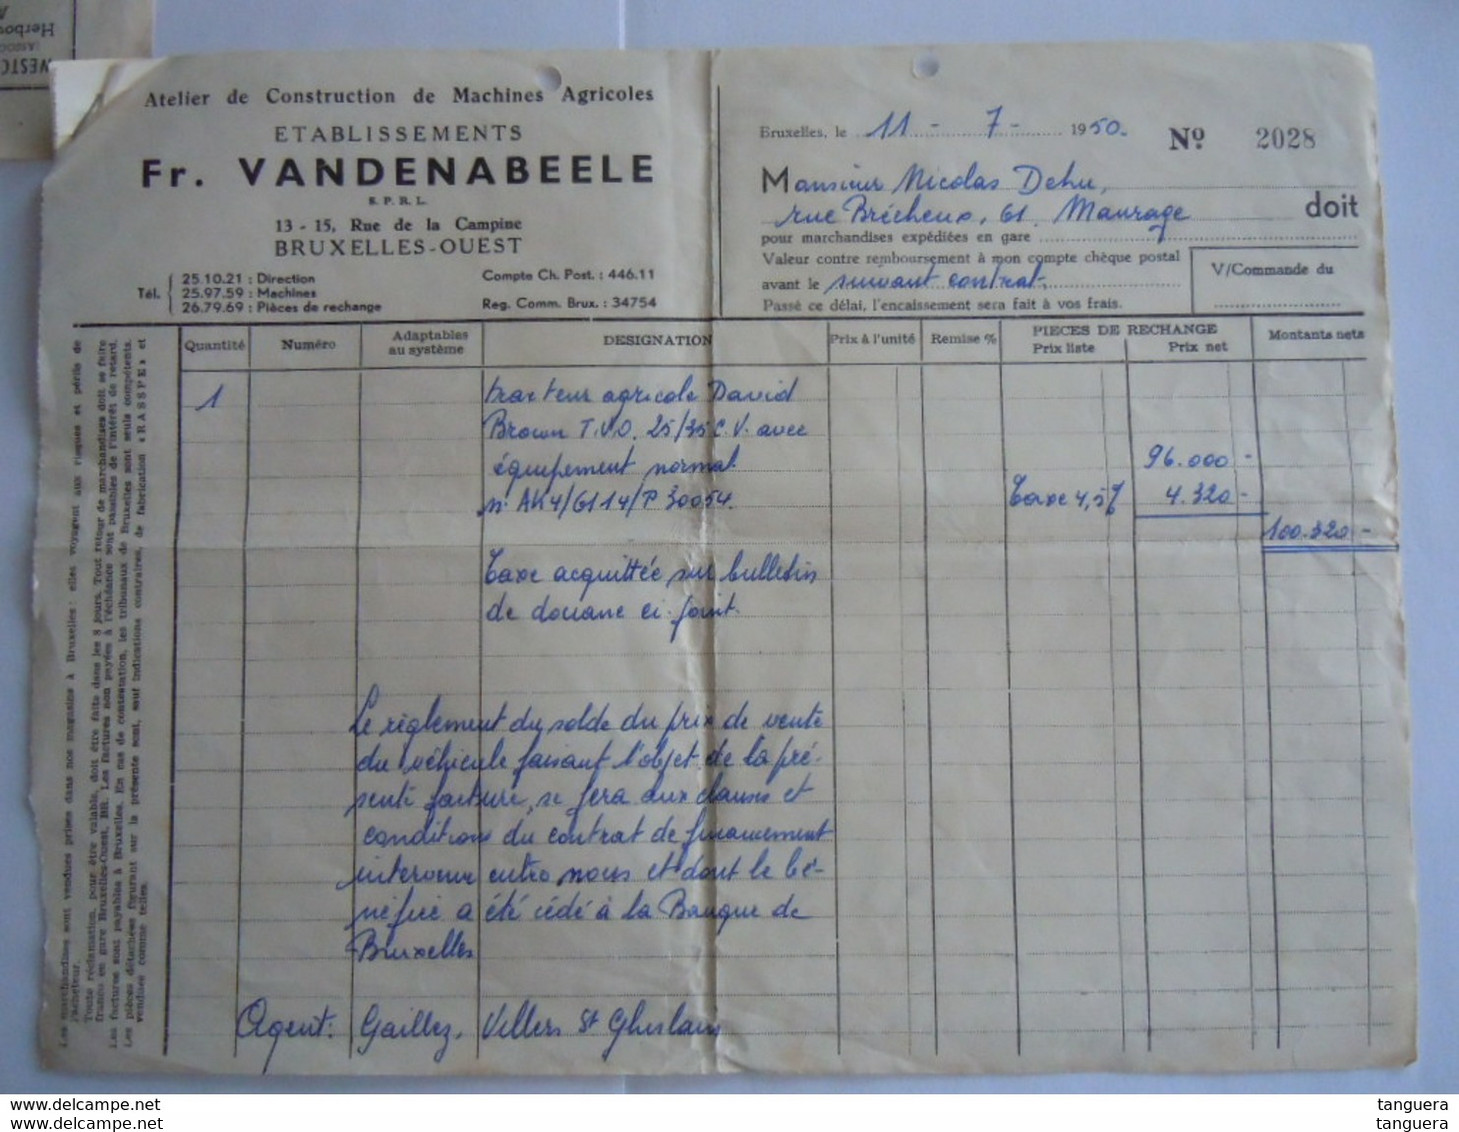 1950 Bulletin Taxes De Transmission Et De Luxe Douane Antwerpen 4320 Fr + Facture Pour Tracteur Agricole David Brown - Documentos